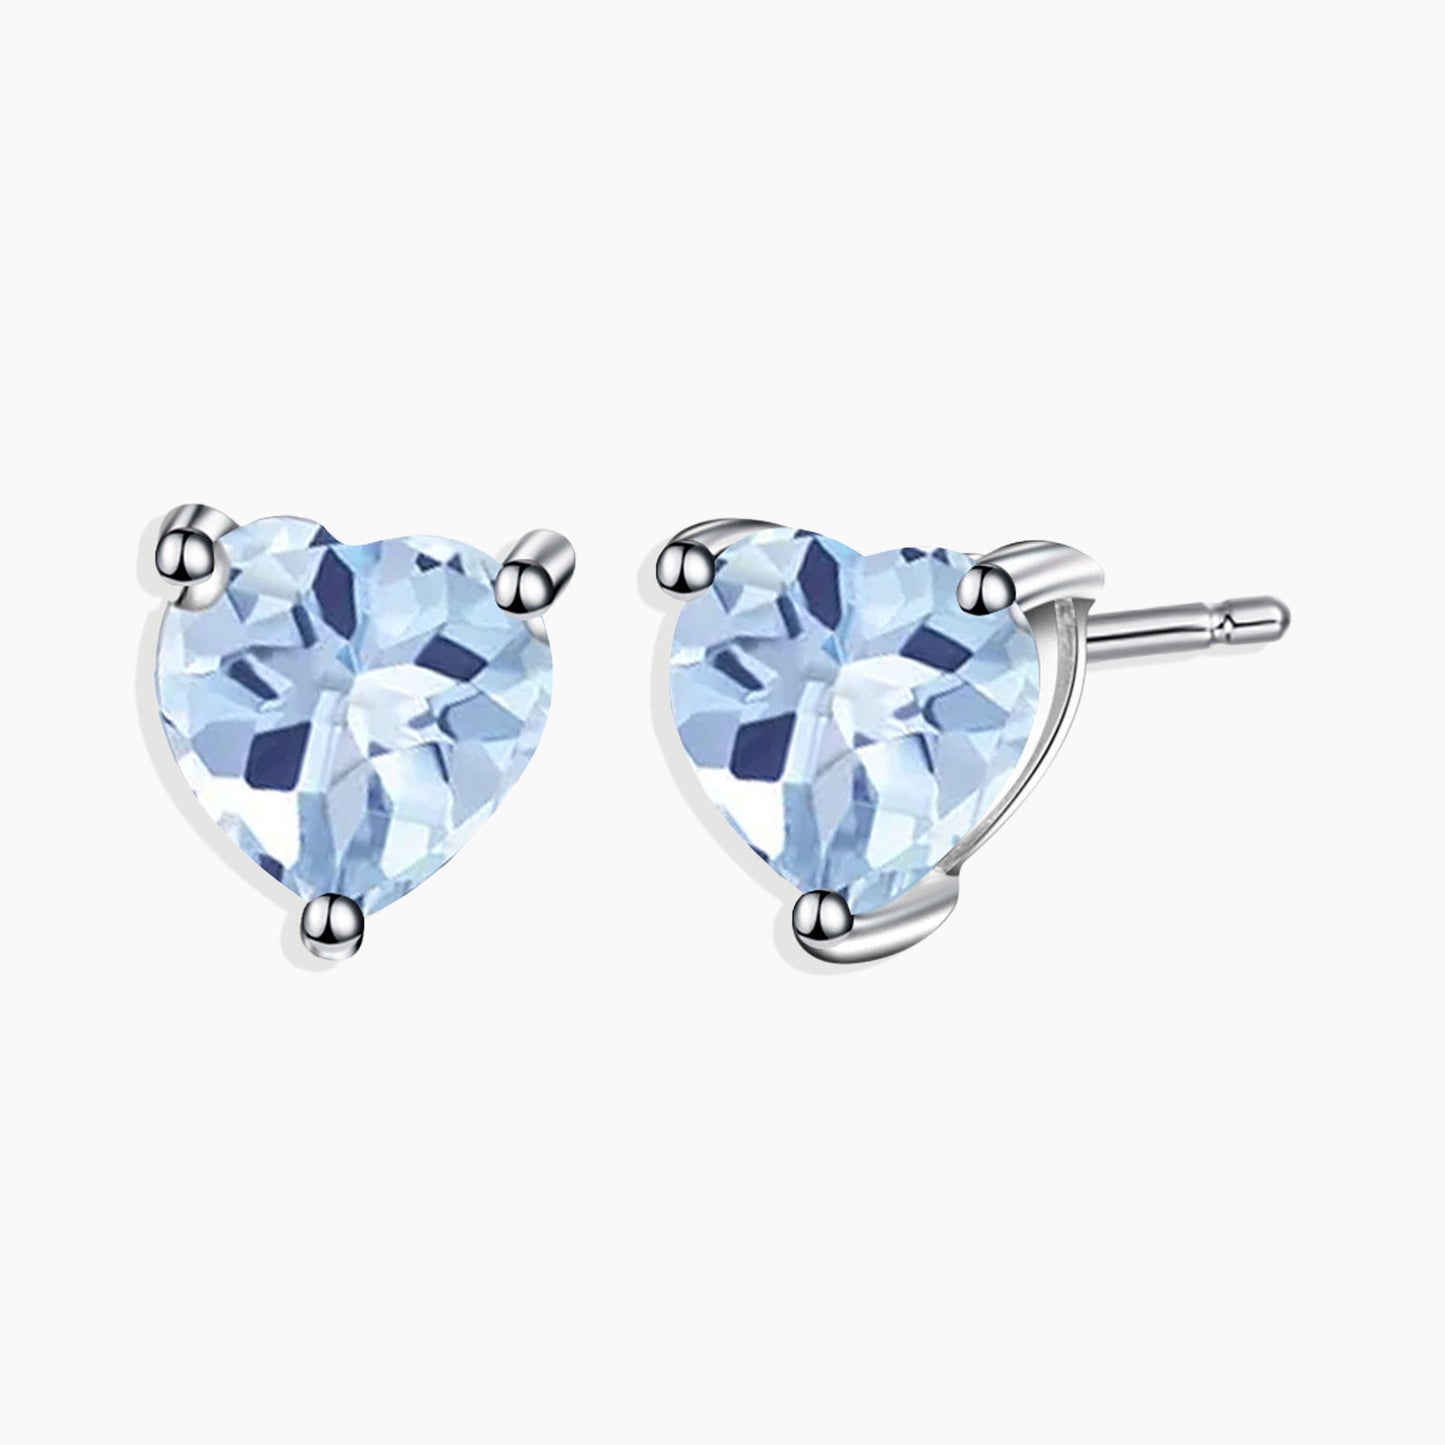 Heart Shape Stud Earrings in Sterling Silver -  Aquamarine